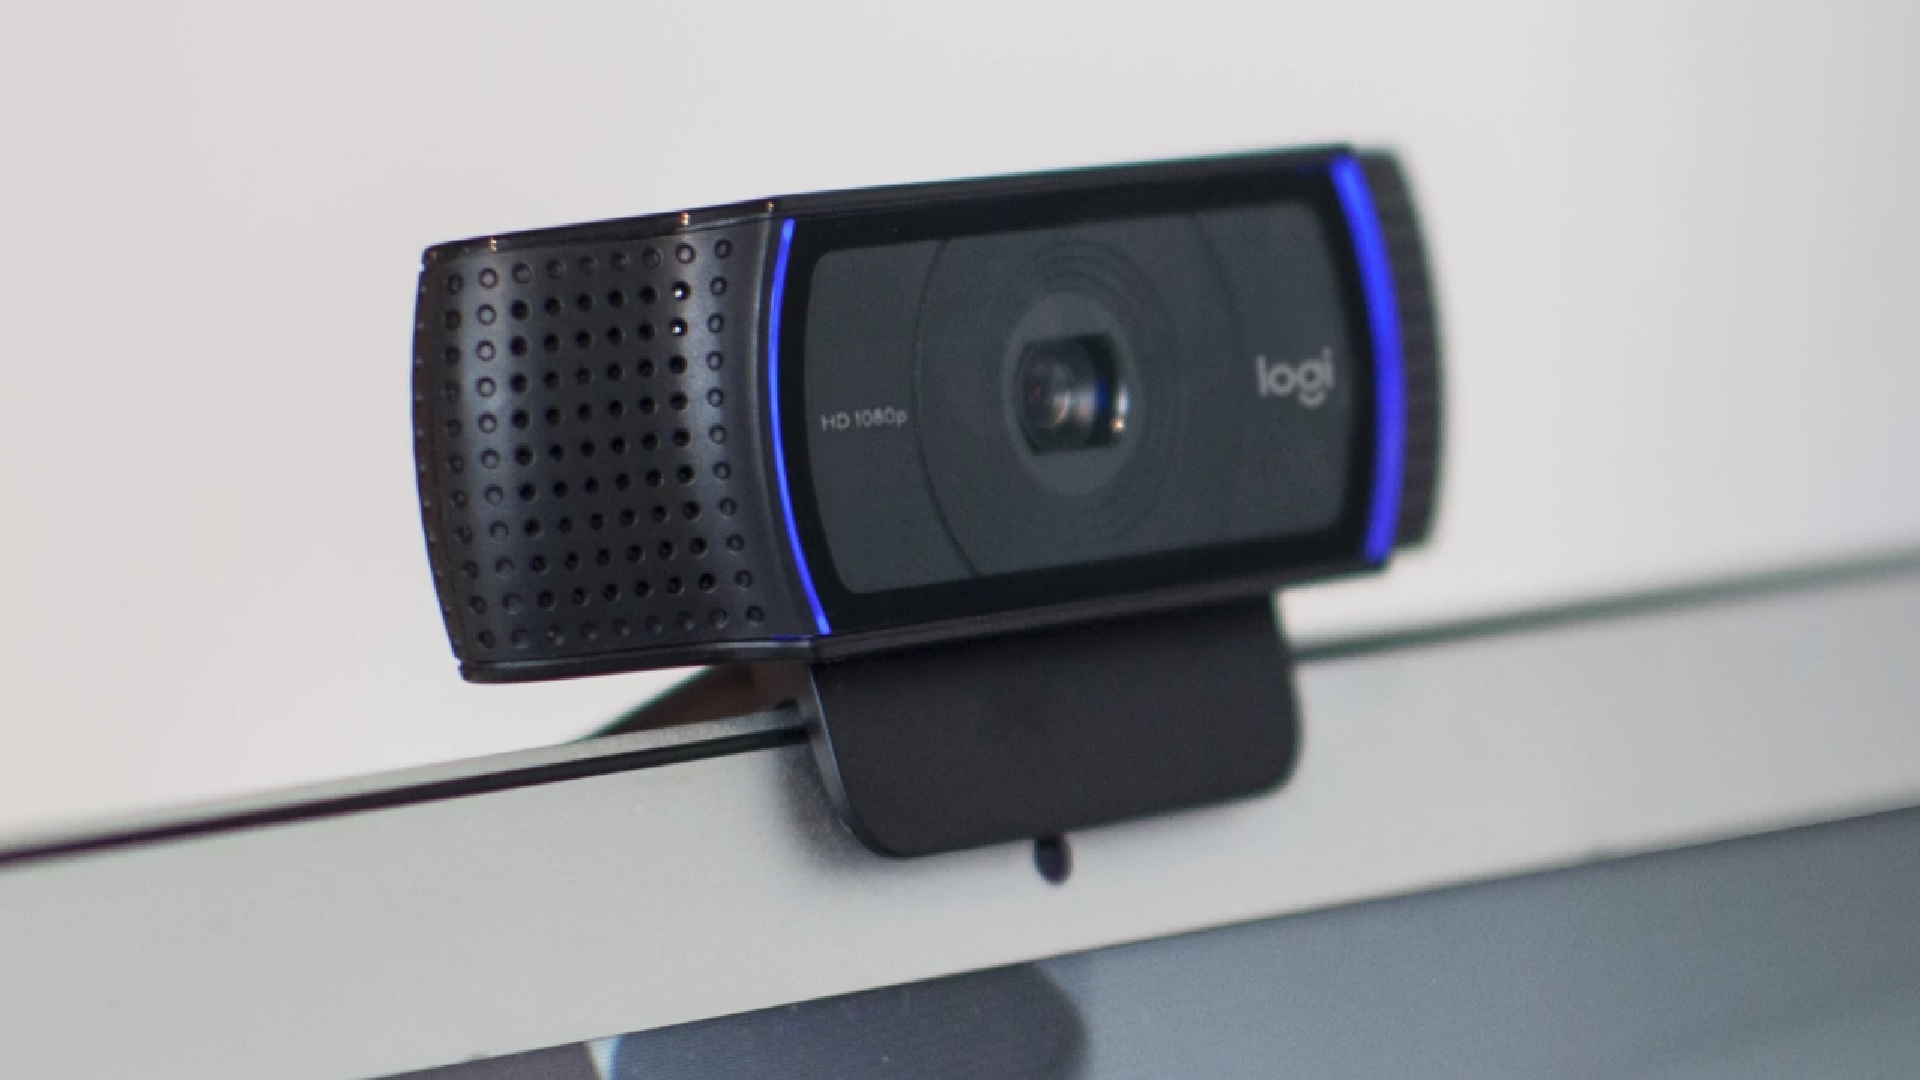 Votre webcam commence à dater ? La C920 Pro de Logitech est à un